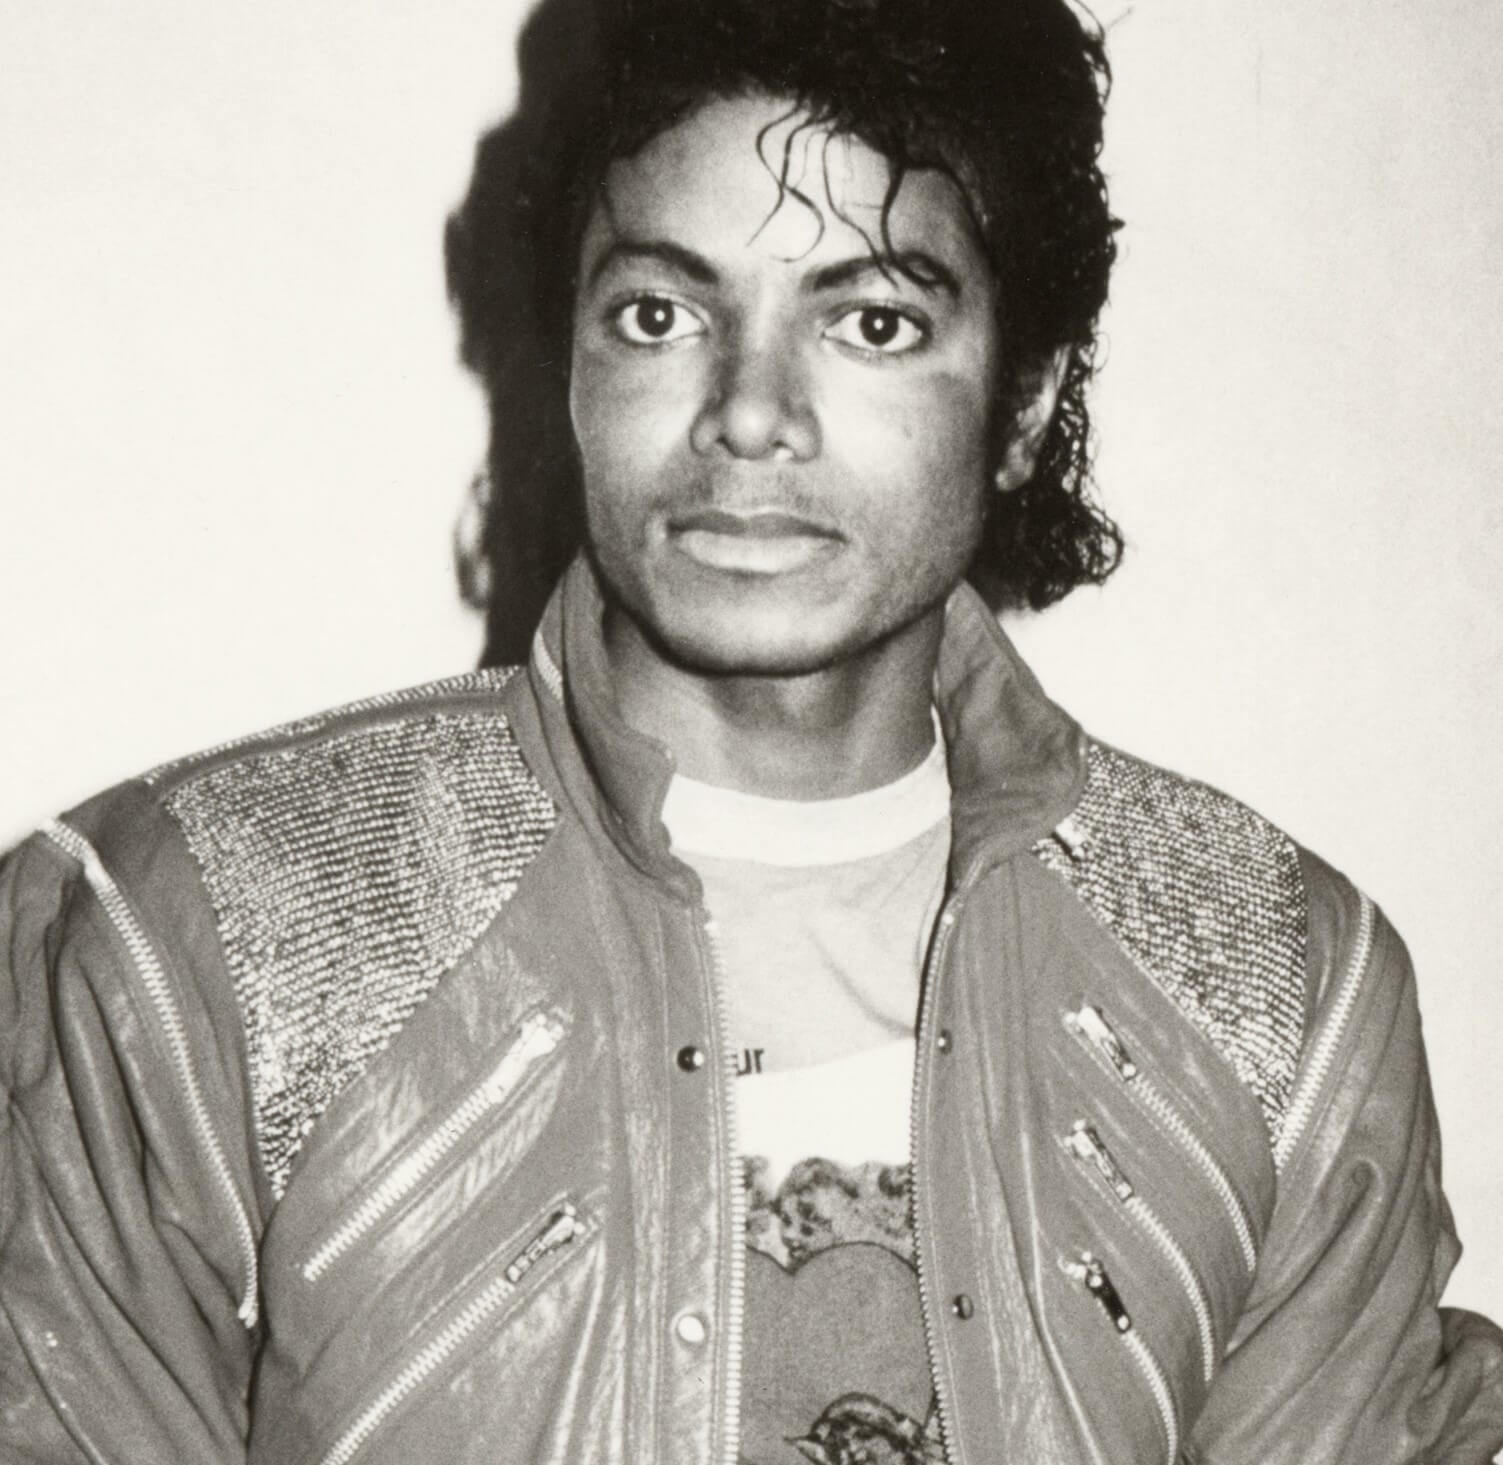 "Smooth Criminal" singer Michael Jackson wearing a jacket